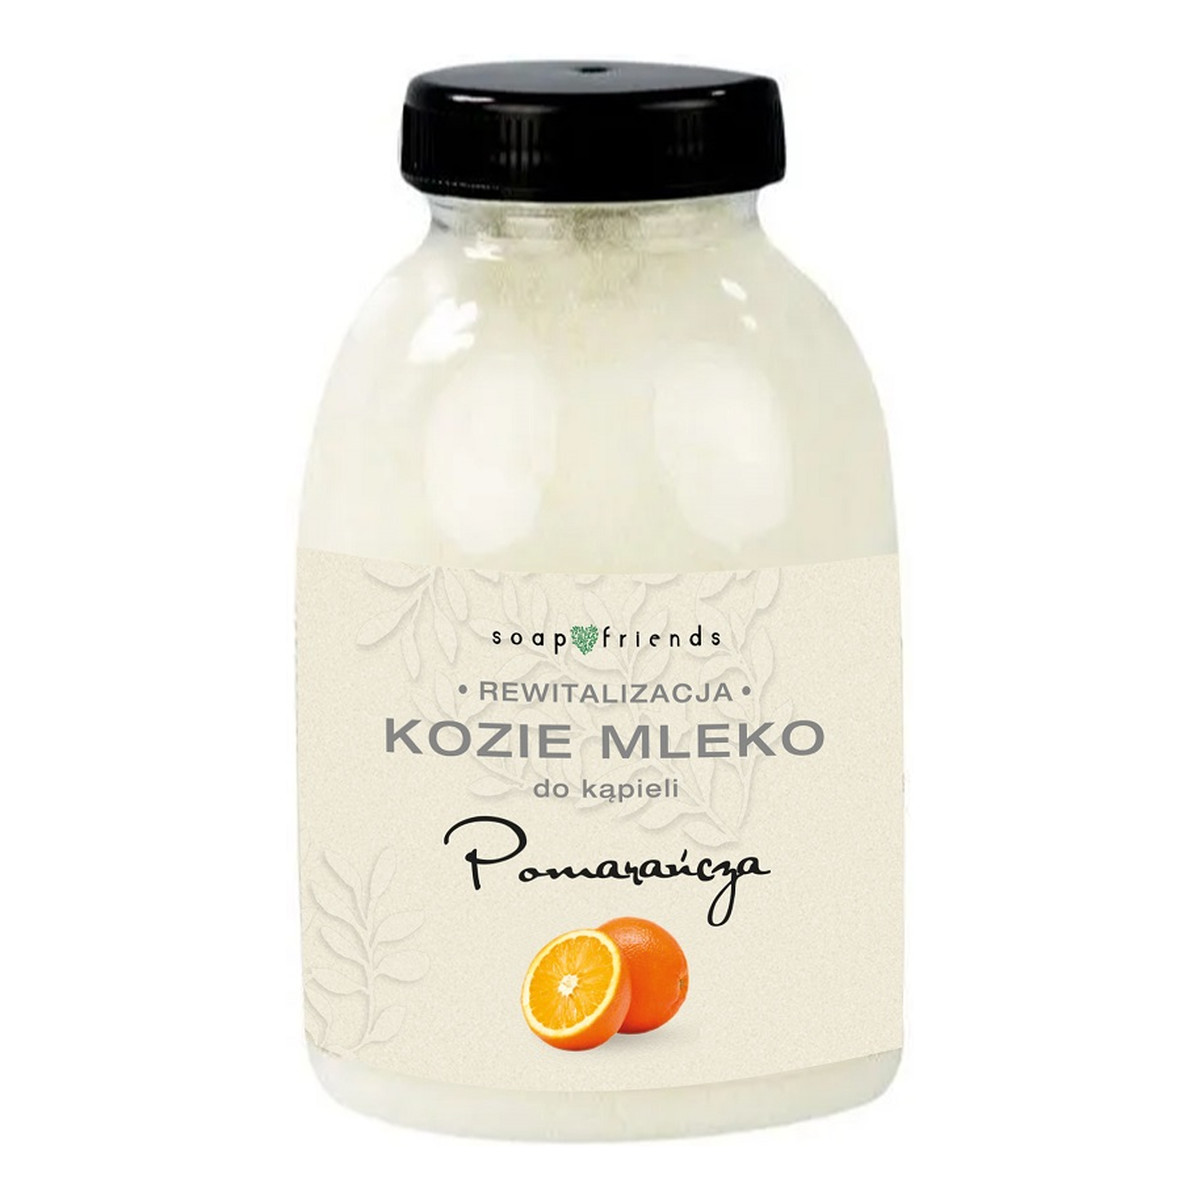 The Secret Soap Store Kozie mleko do kąpieli pomarańcza 250g